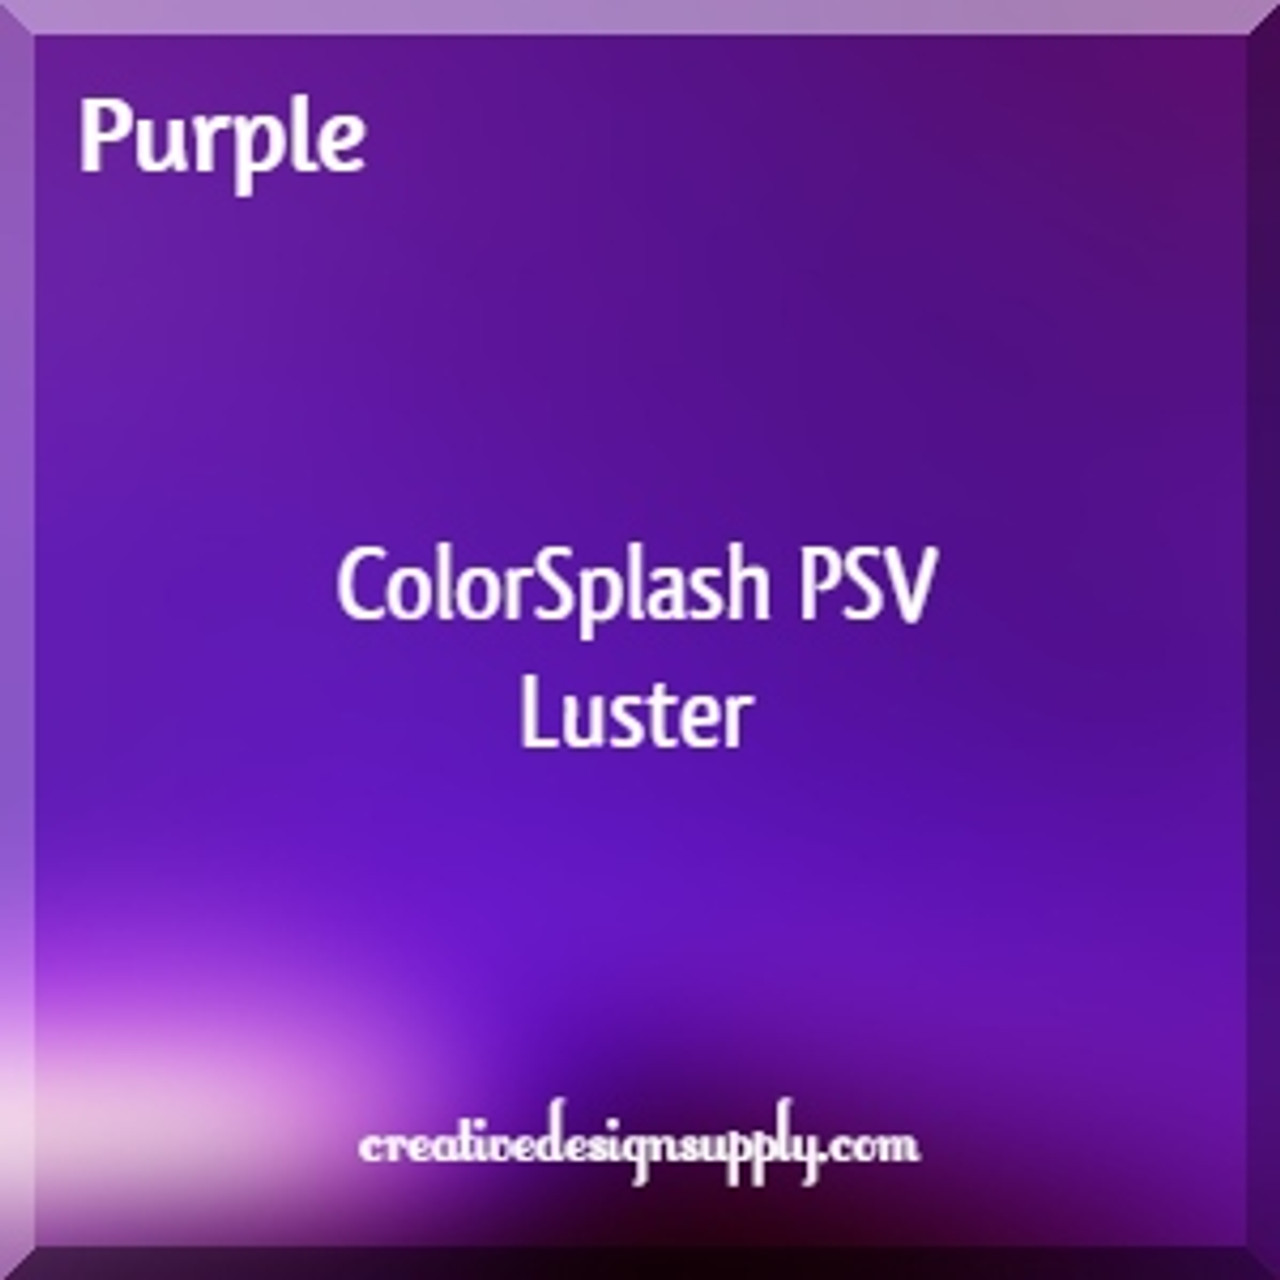 ColorSplash PSV Luster | Purple